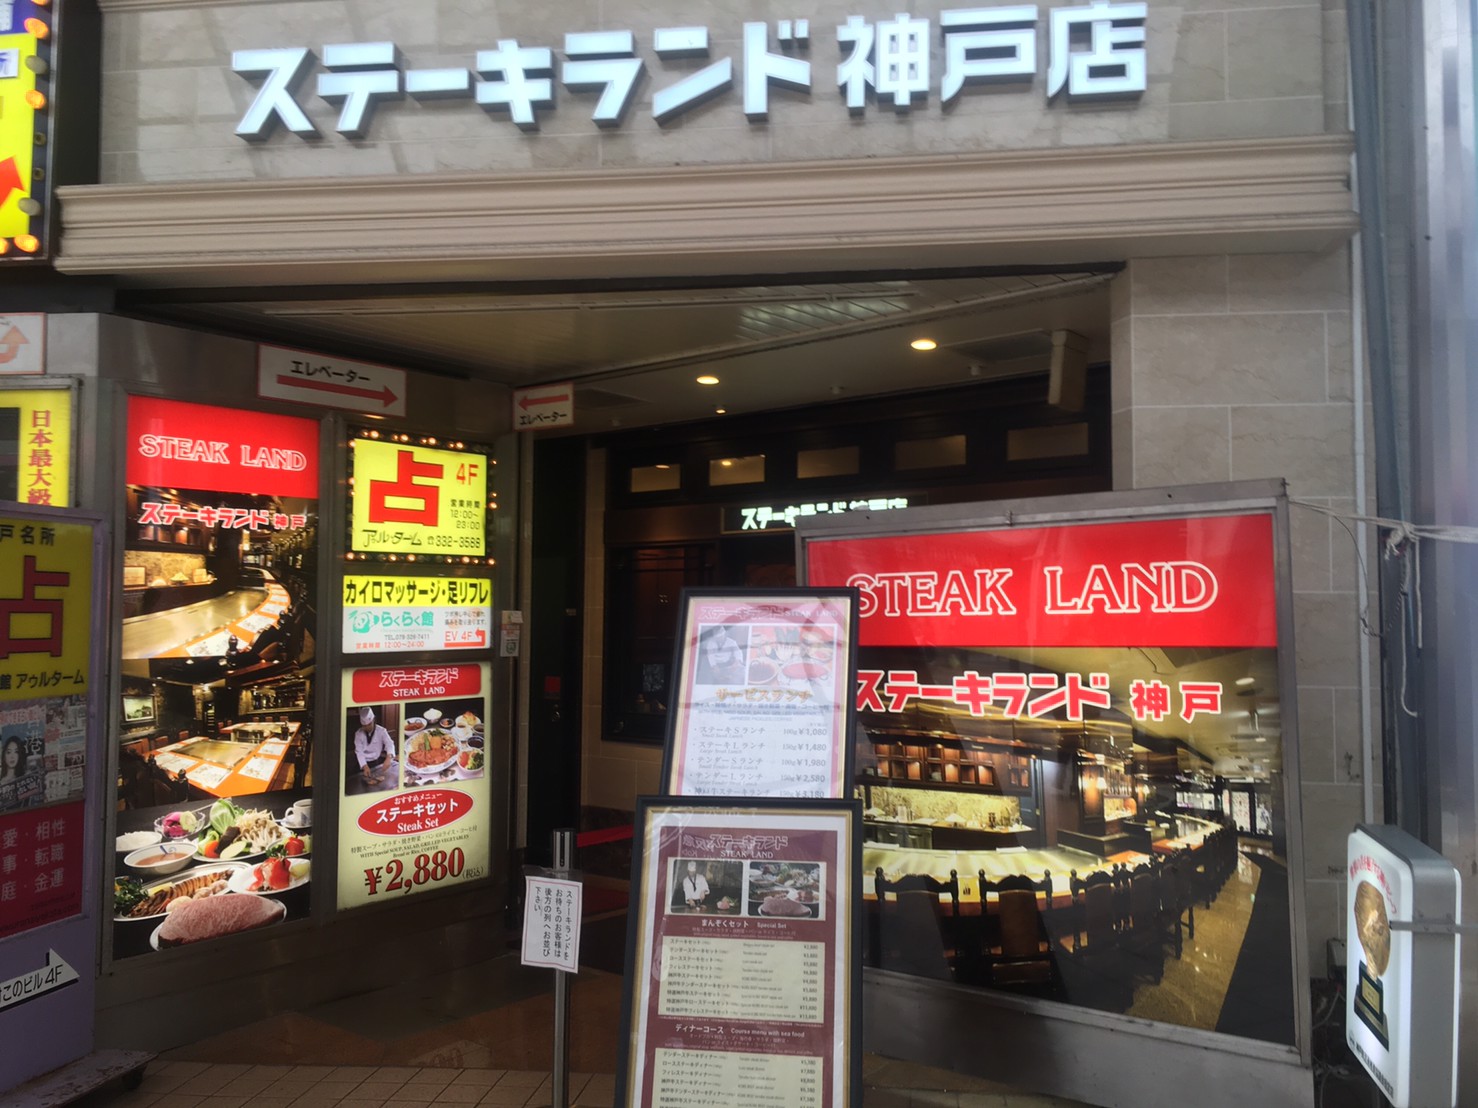 ステーキランド 三宮で大行列 神戸牛ステーキを3180円で食べれるカジュアルなステーキハウス こべログ